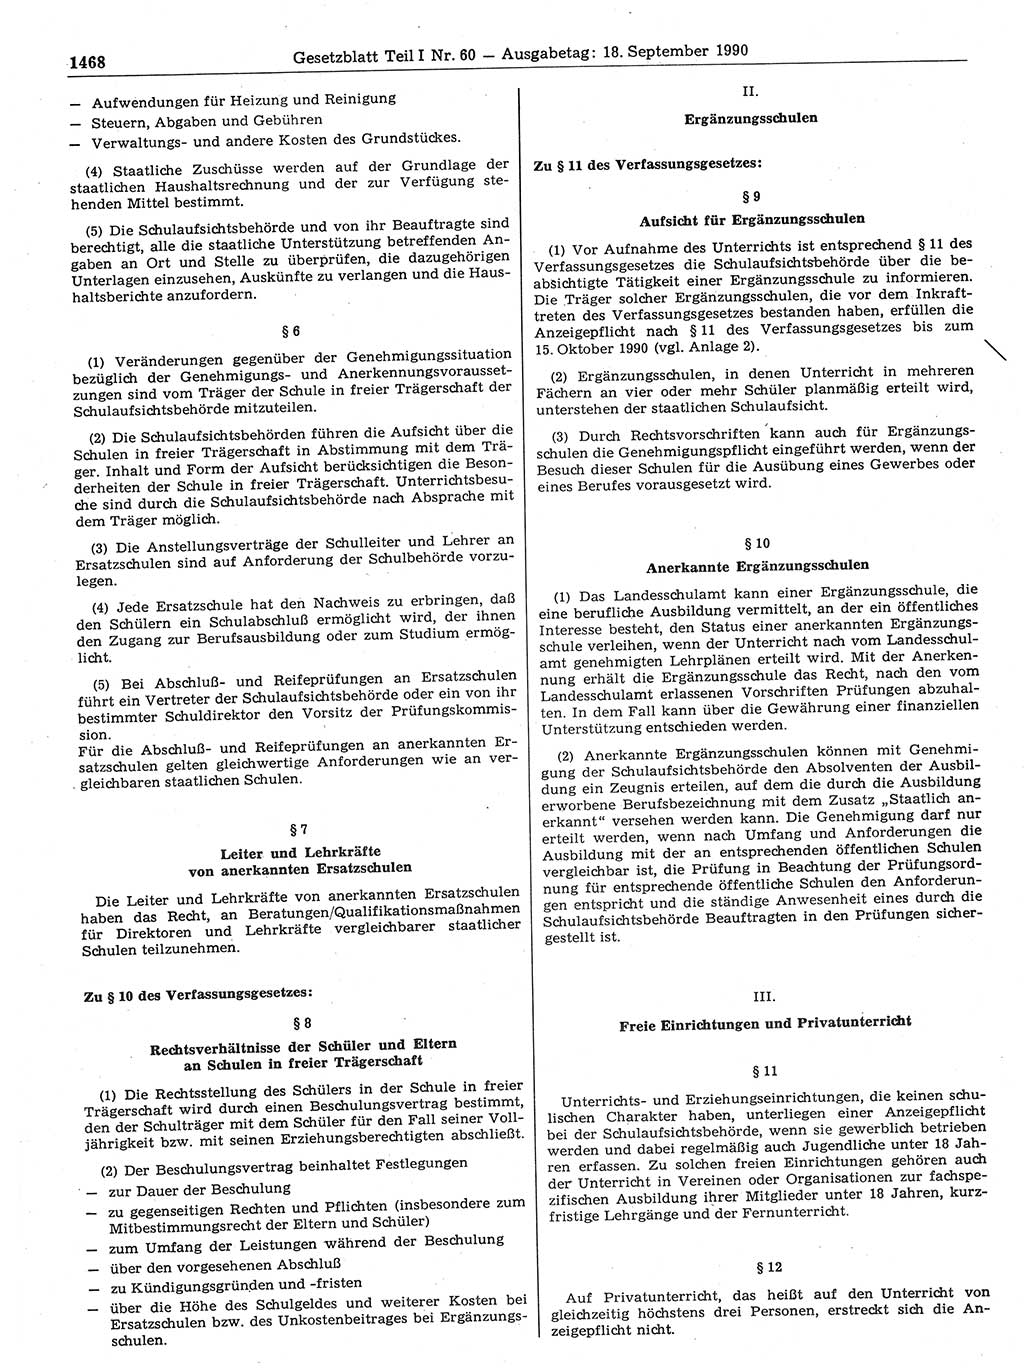 Gesetzblatt (GBl.) der Deutschen Demokratischen Republik (DDR) Teil Ⅰ 1990, Seite 1468 (GBl. DDR Ⅰ 1990, S. 1468)